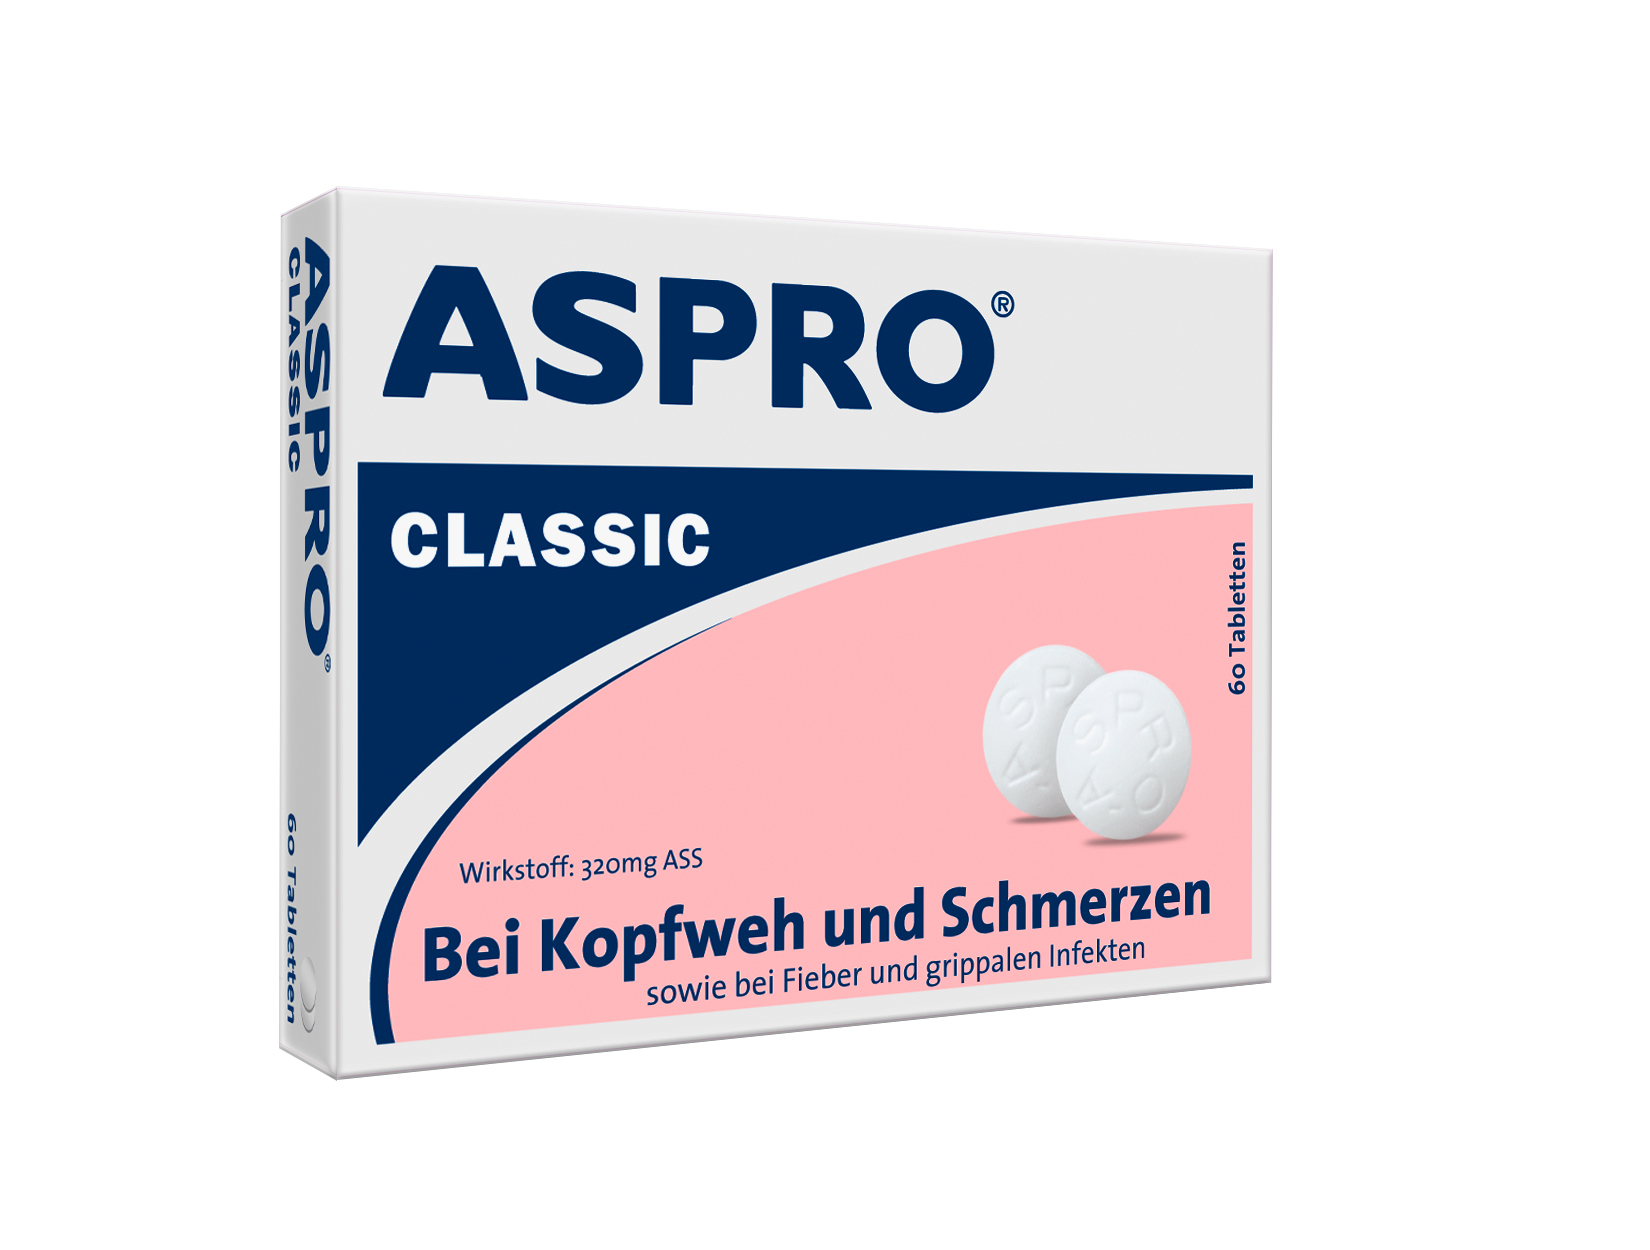 Aspro Classic 320 mg ASS - Tabletten